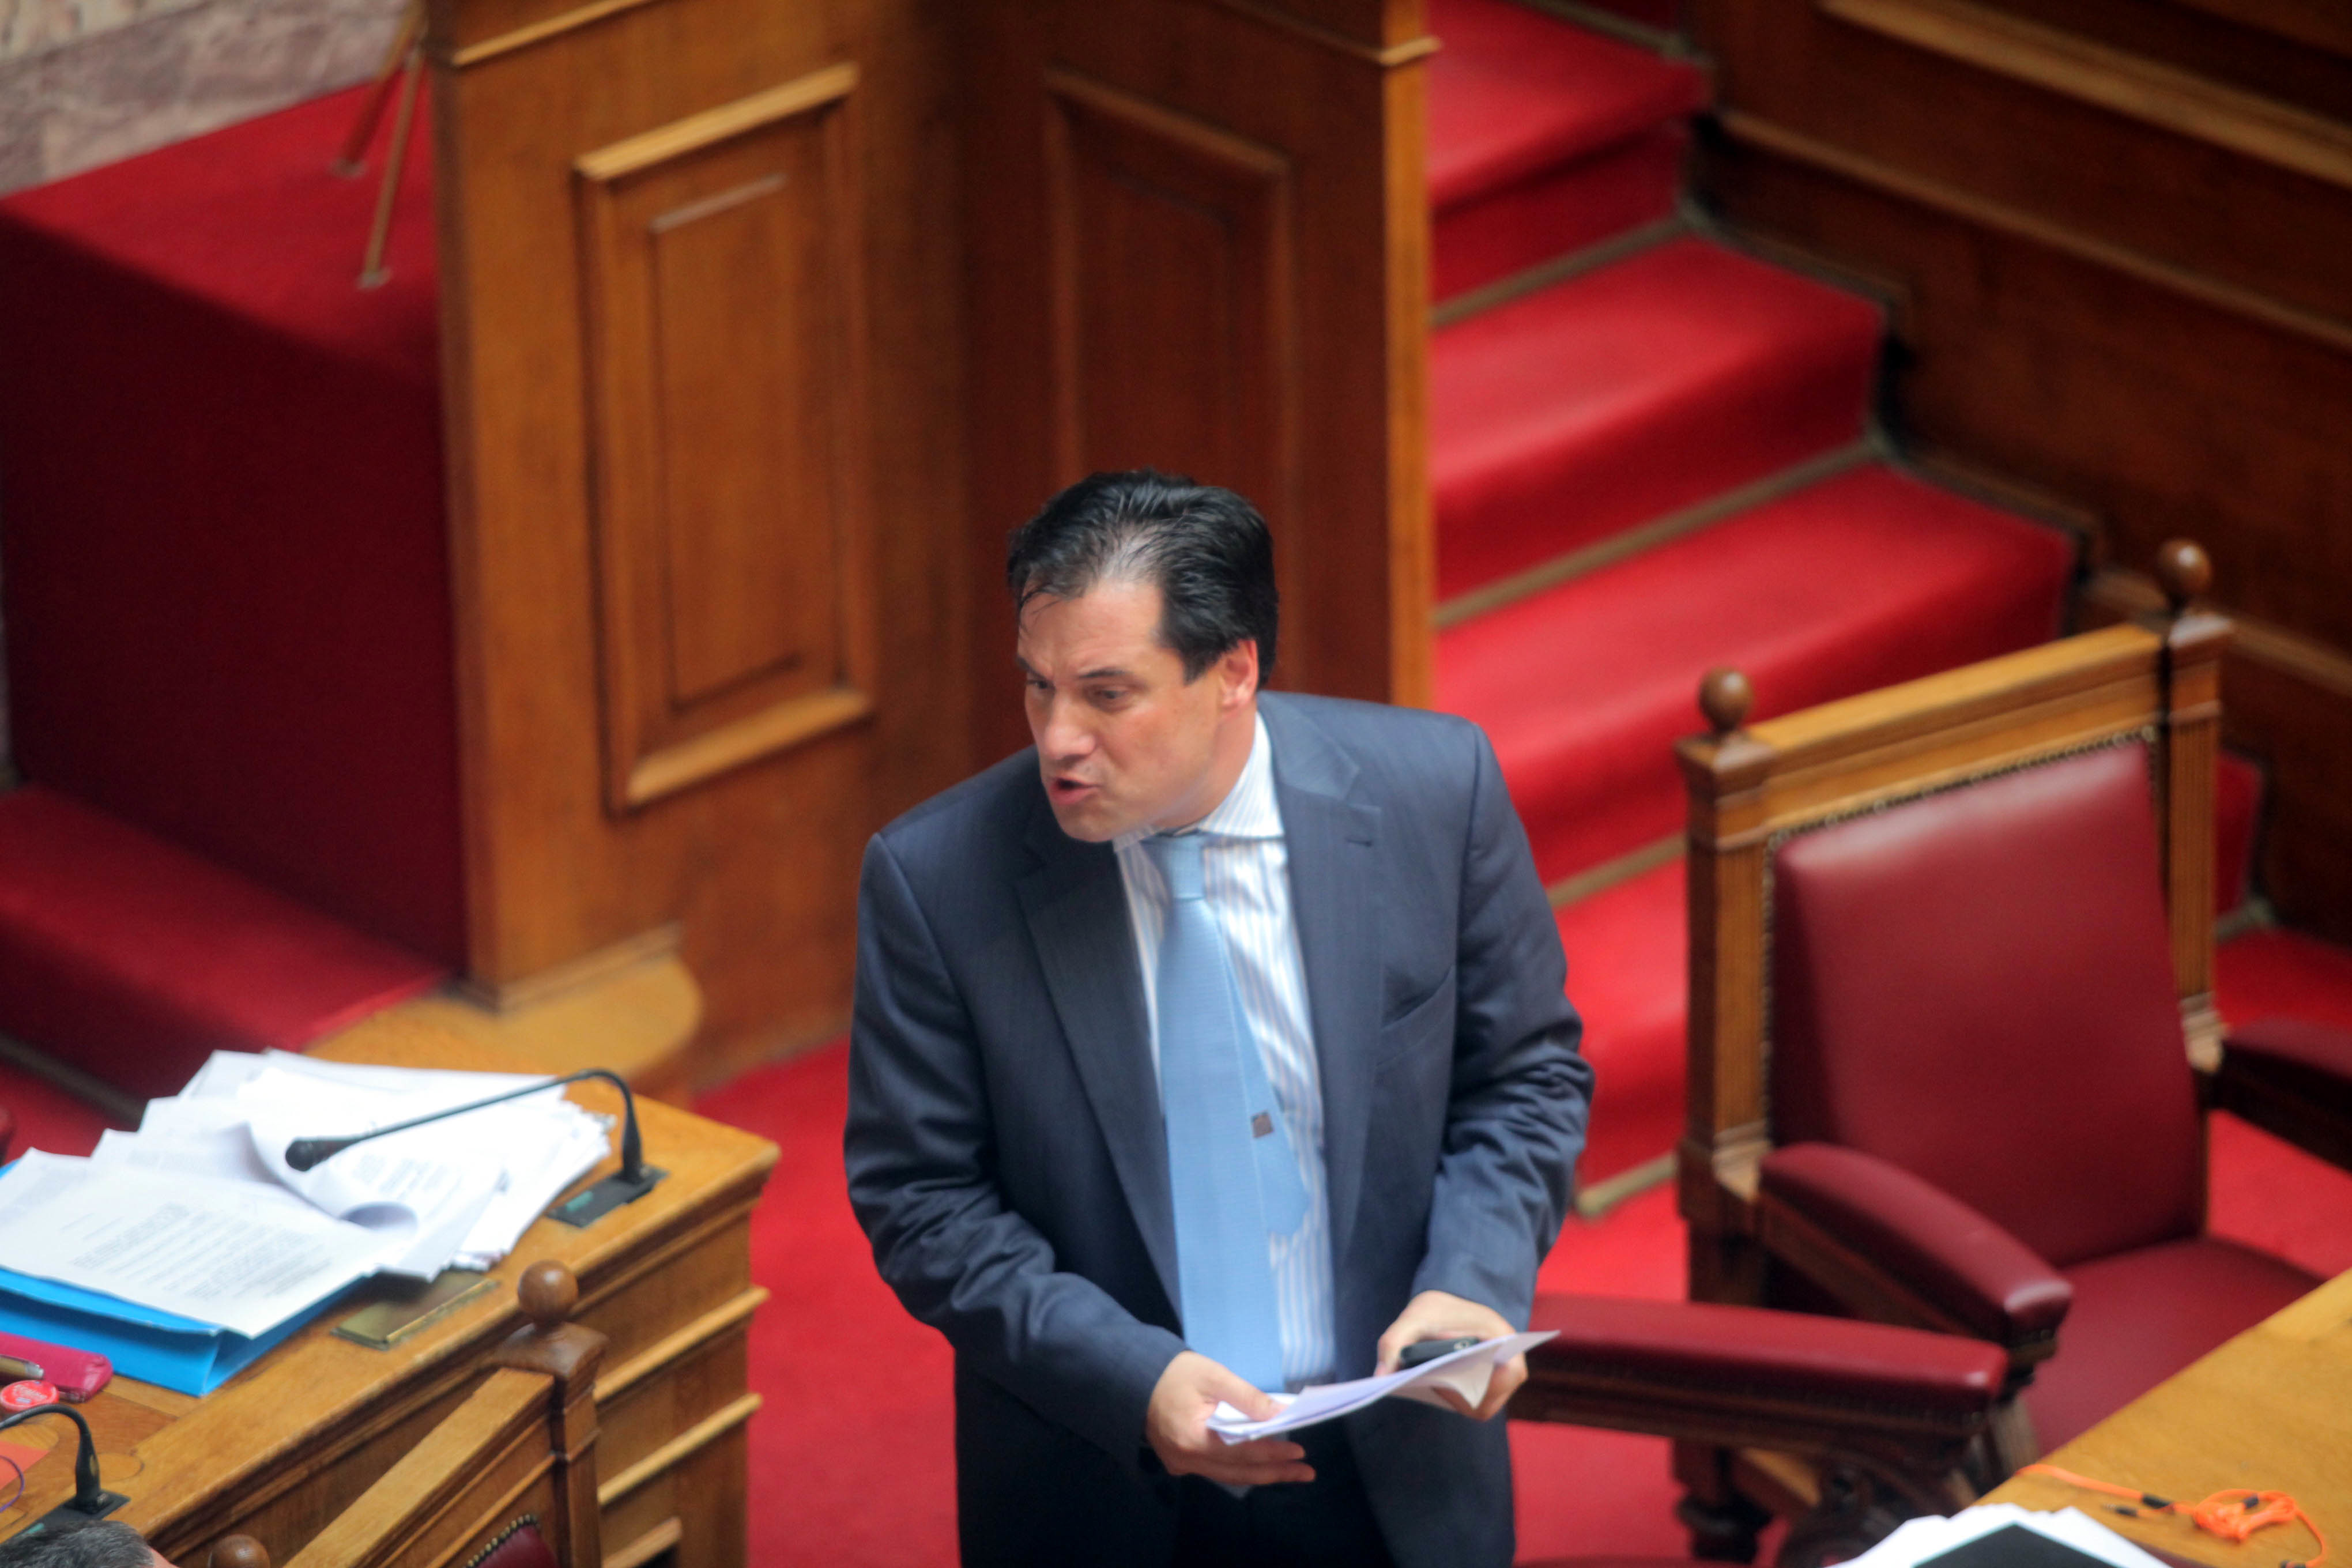 Χαμός στη Βουλή! Κουρουπλής: Είστε ο υπουργός των ράντζων – Γεωργιάδης: Είστε κοινός συκοφάντης